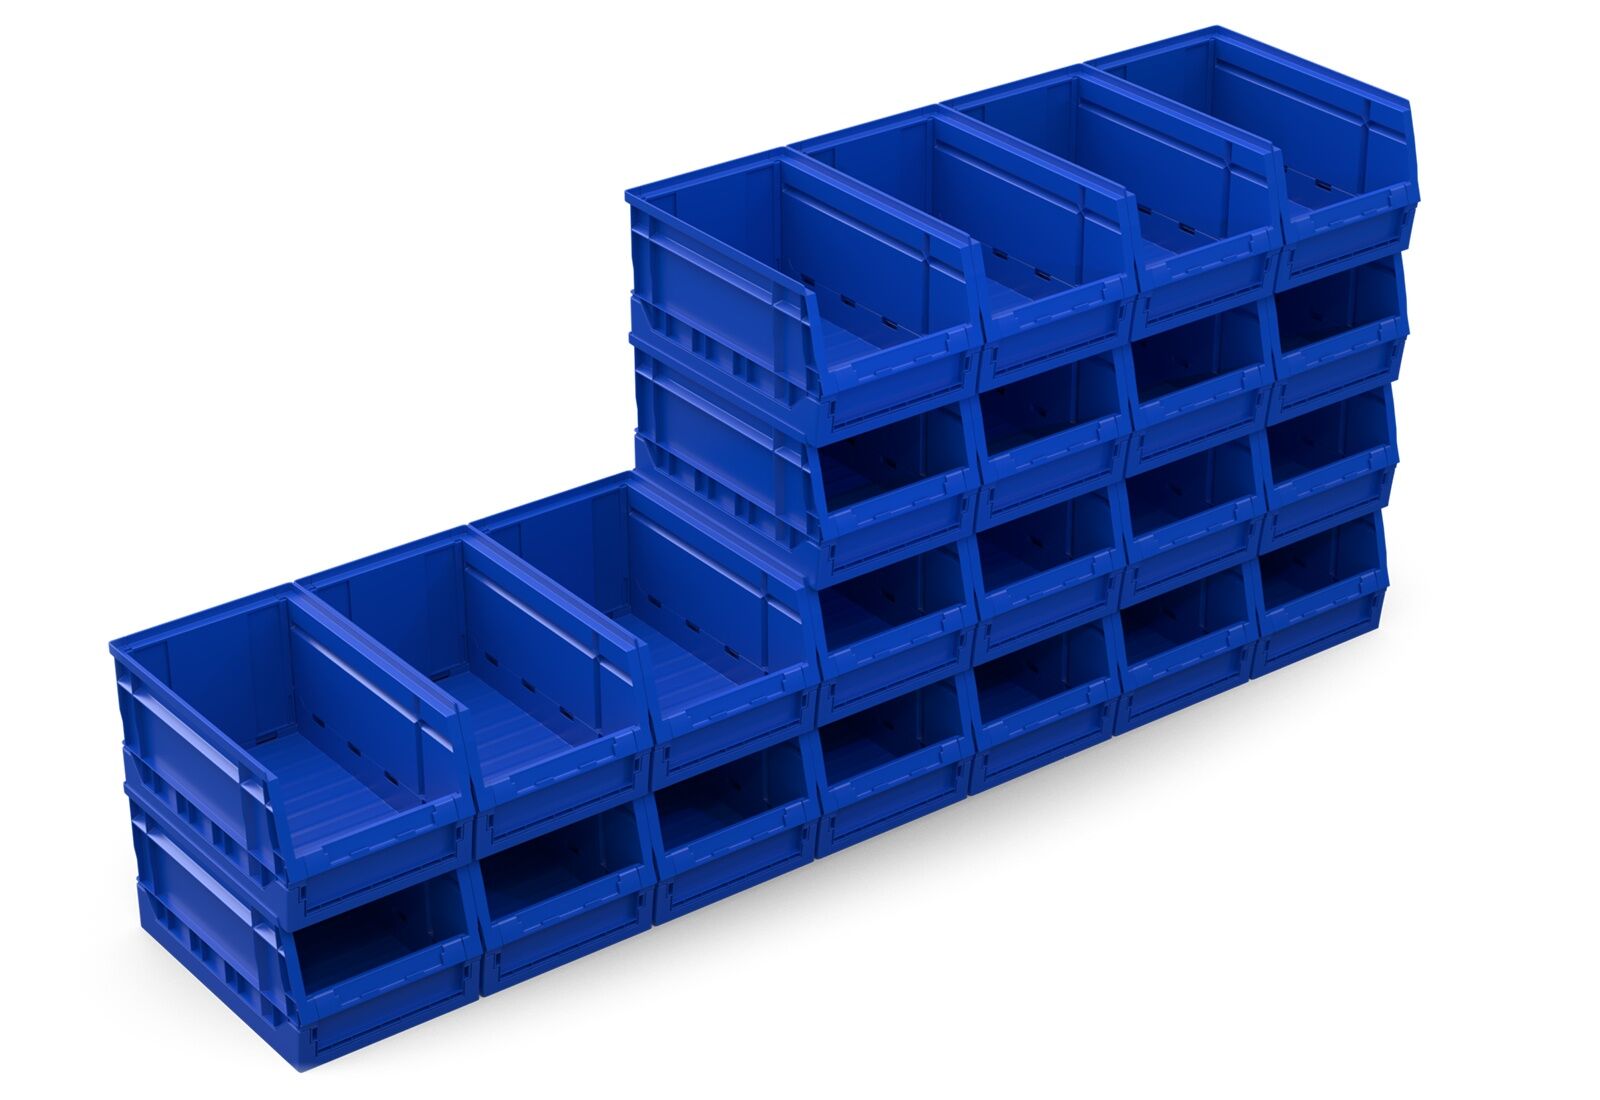 3 m estantería de baldas FB200 / 50 cm profundidad / 1,8 m altura / 4  niveles / baldas acero / carga por balda 200 kg